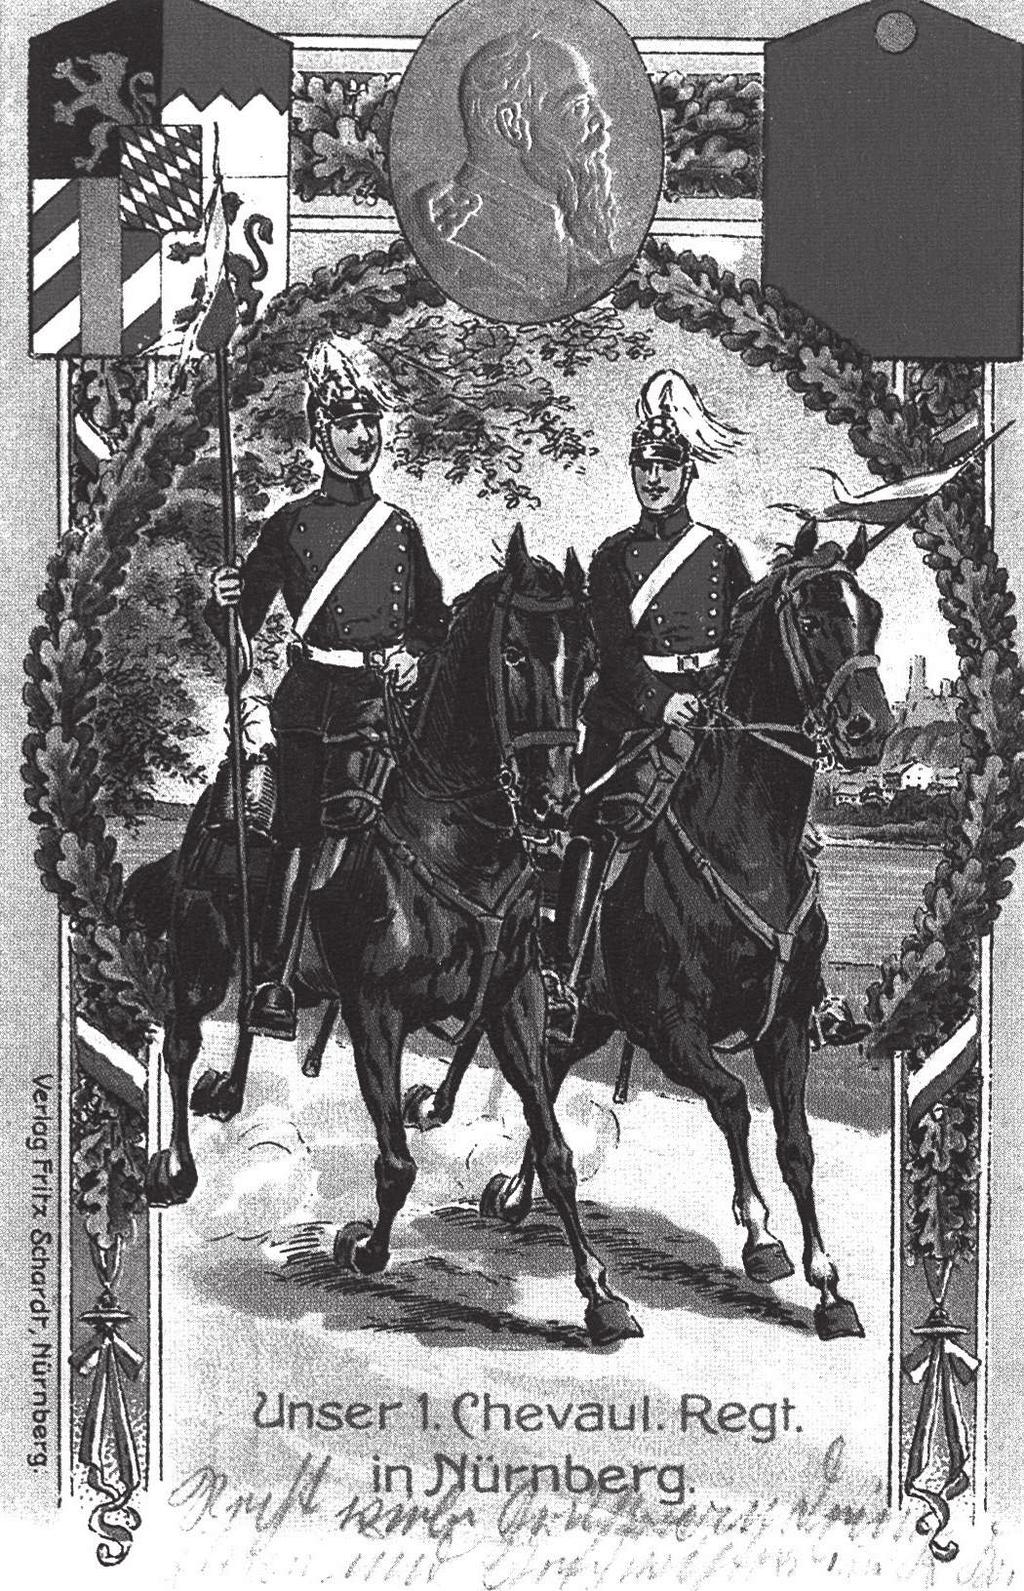 Chevauxleger Regiment wurde 1682 aufgestellt und entwickelte sich bald zu einem Eliteregiment, das an allen bayerischen Kriegen bis 1919 teilnahm.